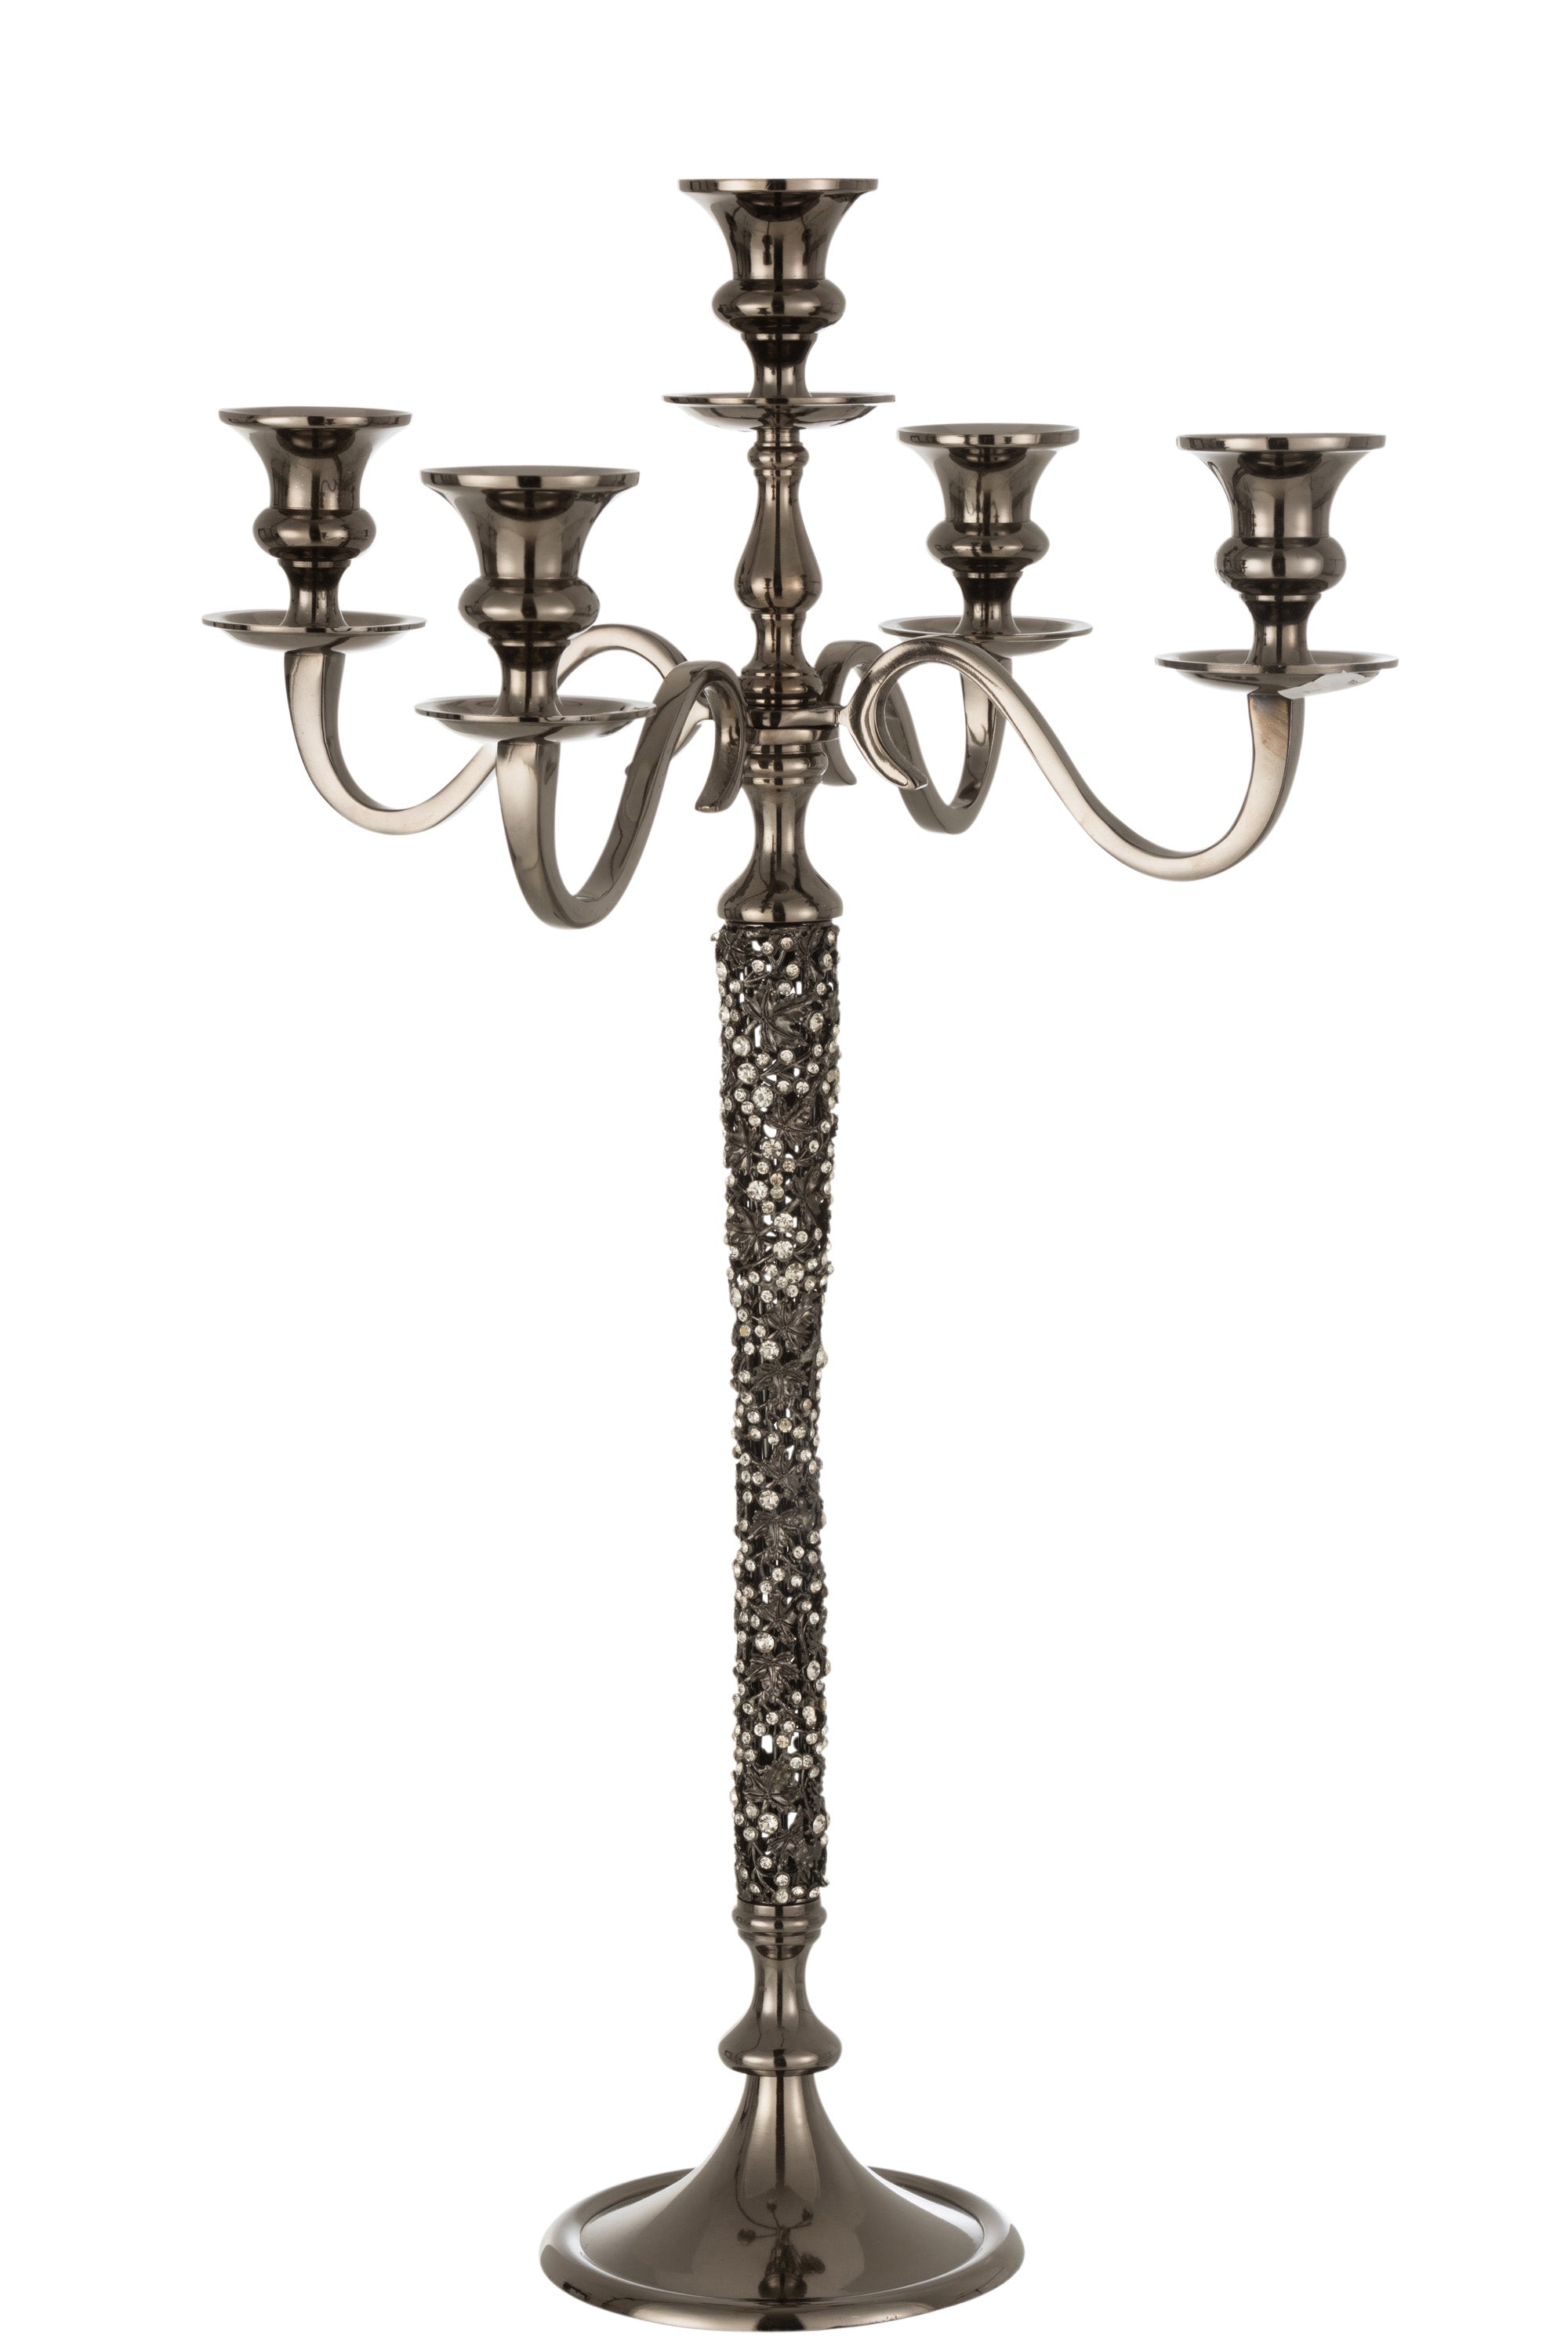 Fünfarmiger klassischer Kerzenleuchter mit geschwungenen Armen und Verzierungen entlang des Mittelteils;  aus silbergrauem Metall.